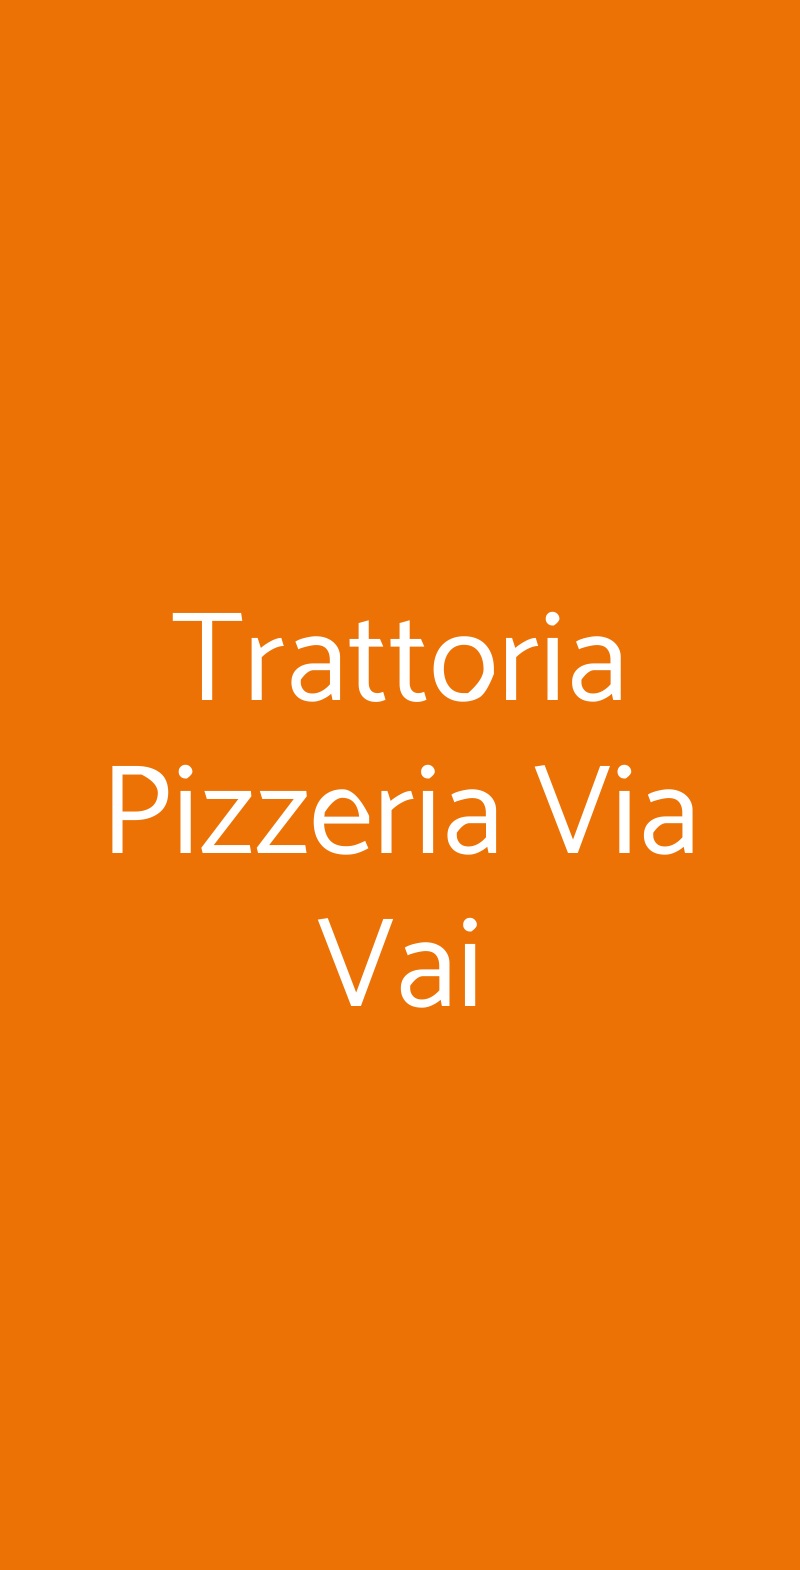 Trattoria Pizzeria Via Vai Milano menù 1 pagina